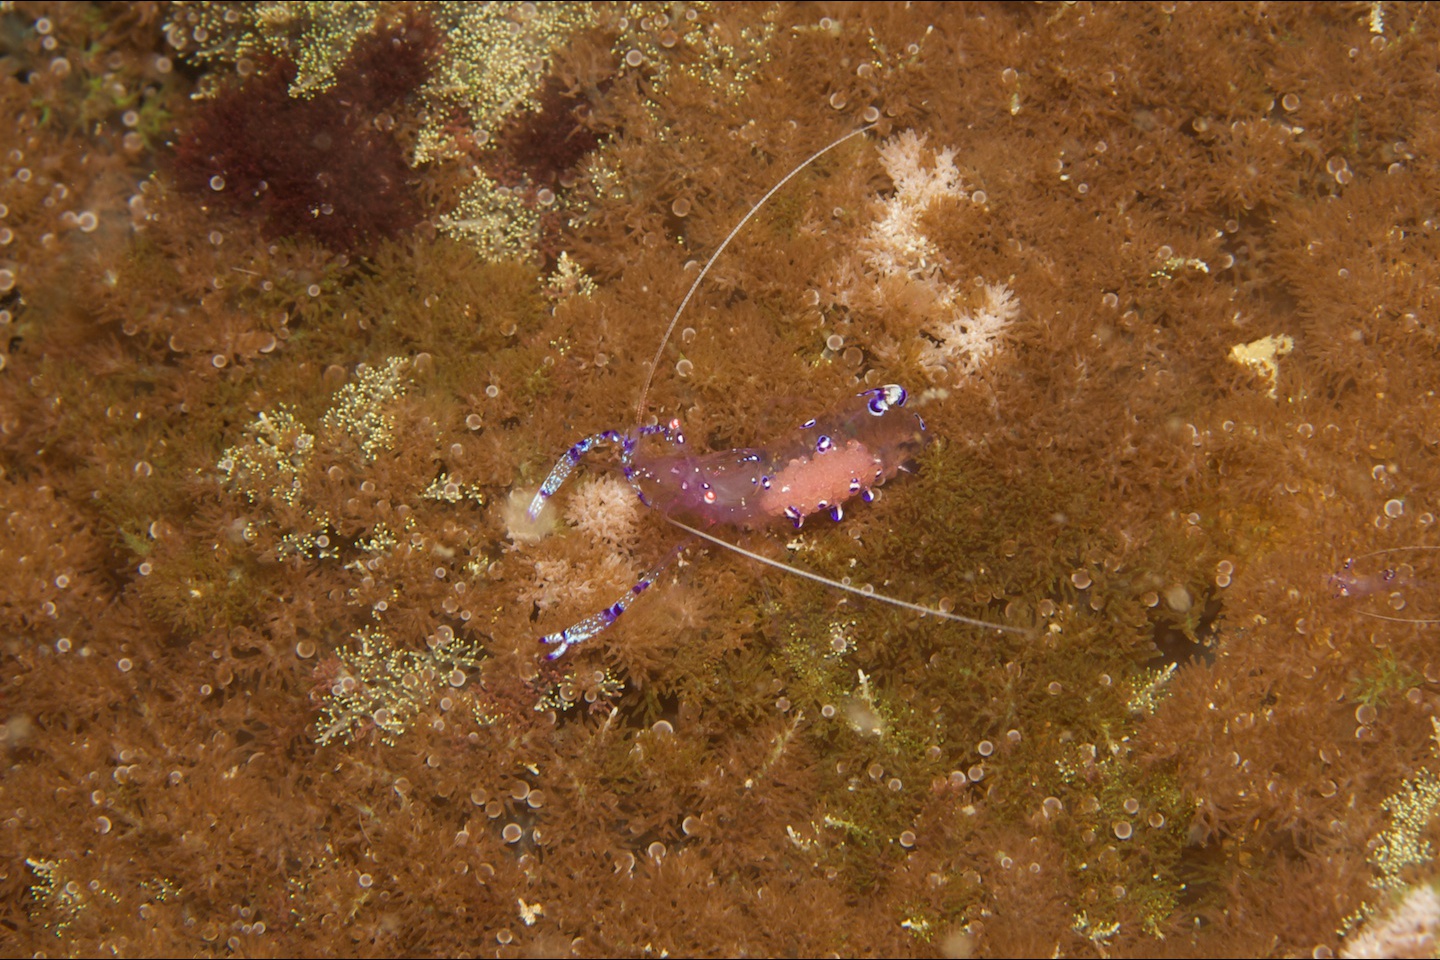 Sarasvati anemone shrimp